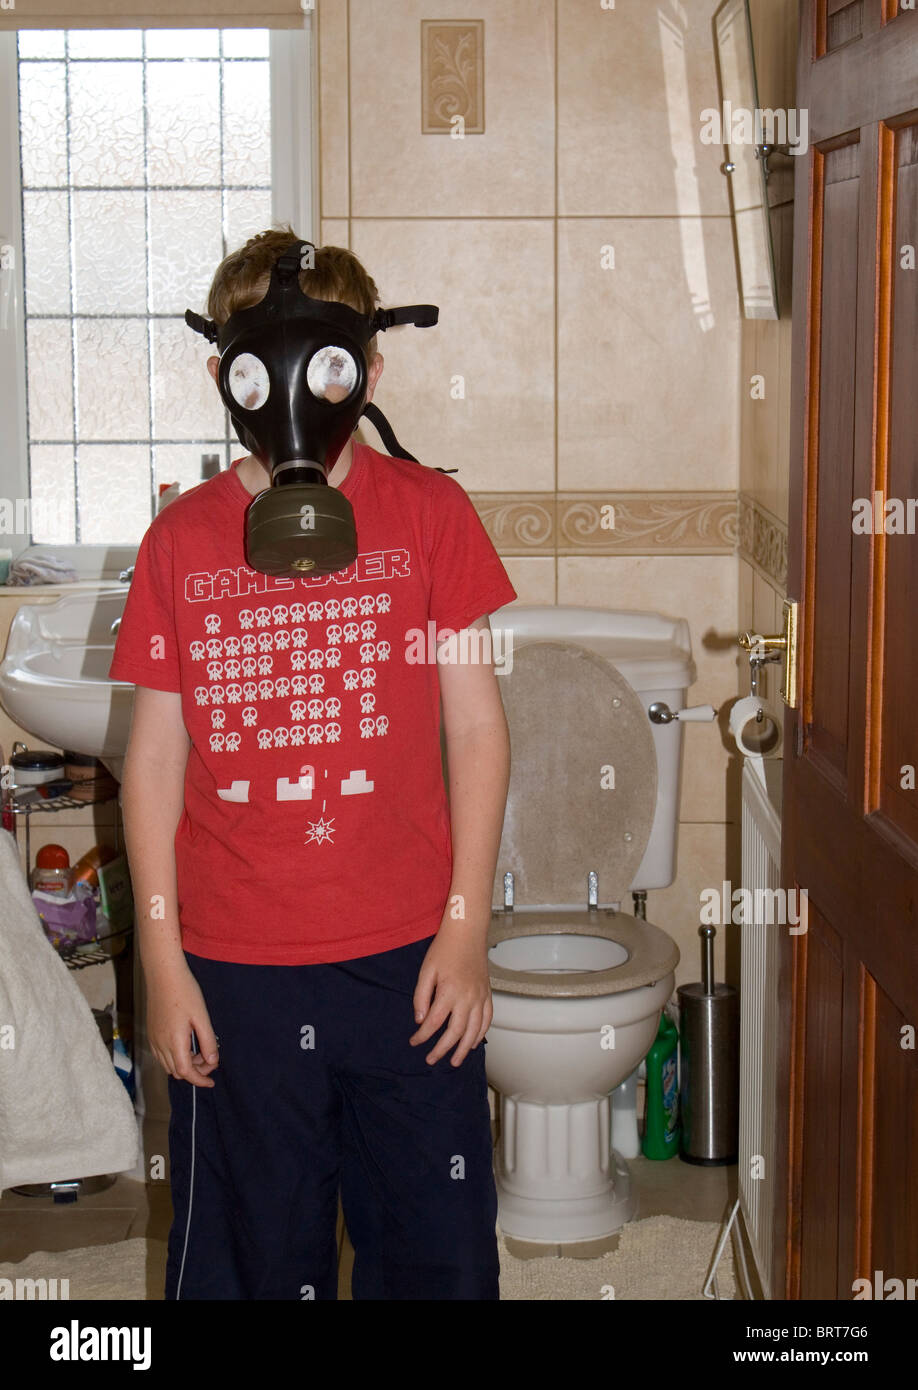 11 Jahre alter Junge mit Gasmaske, so verlässt er das Bad/WC Stockfoto